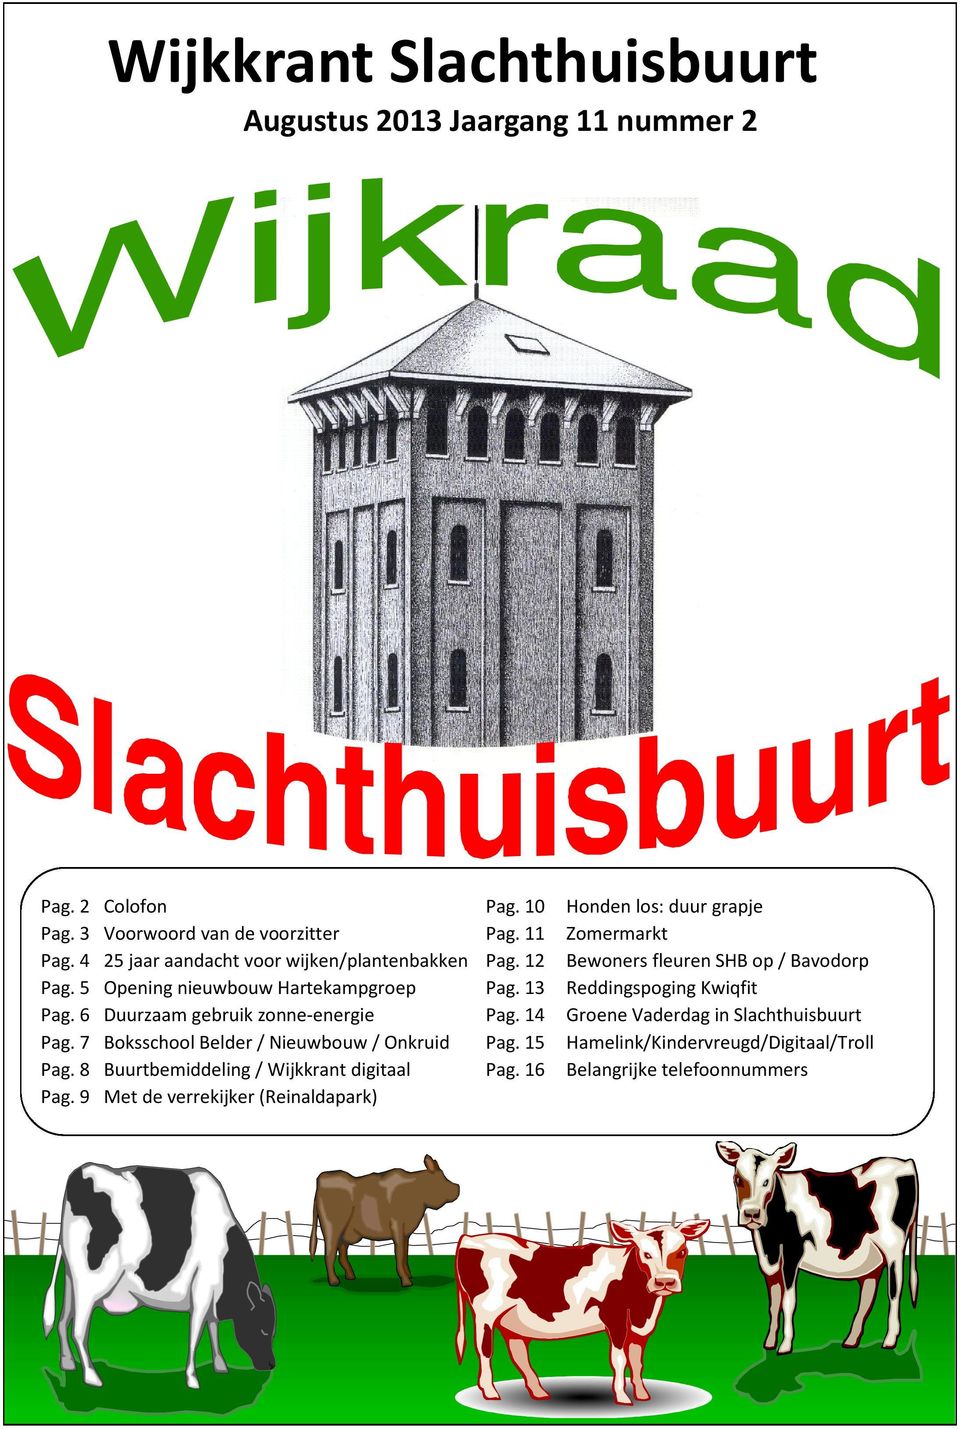 7 Boksschool Belder / Nieuwbouw / Onkruid Pag. 8 Buurtbemiddeling / Wijkkrant digitaal Pag. 9 Met de verrekijker (Reinaldapark) Pag. 10 Pag. 11 Pag.